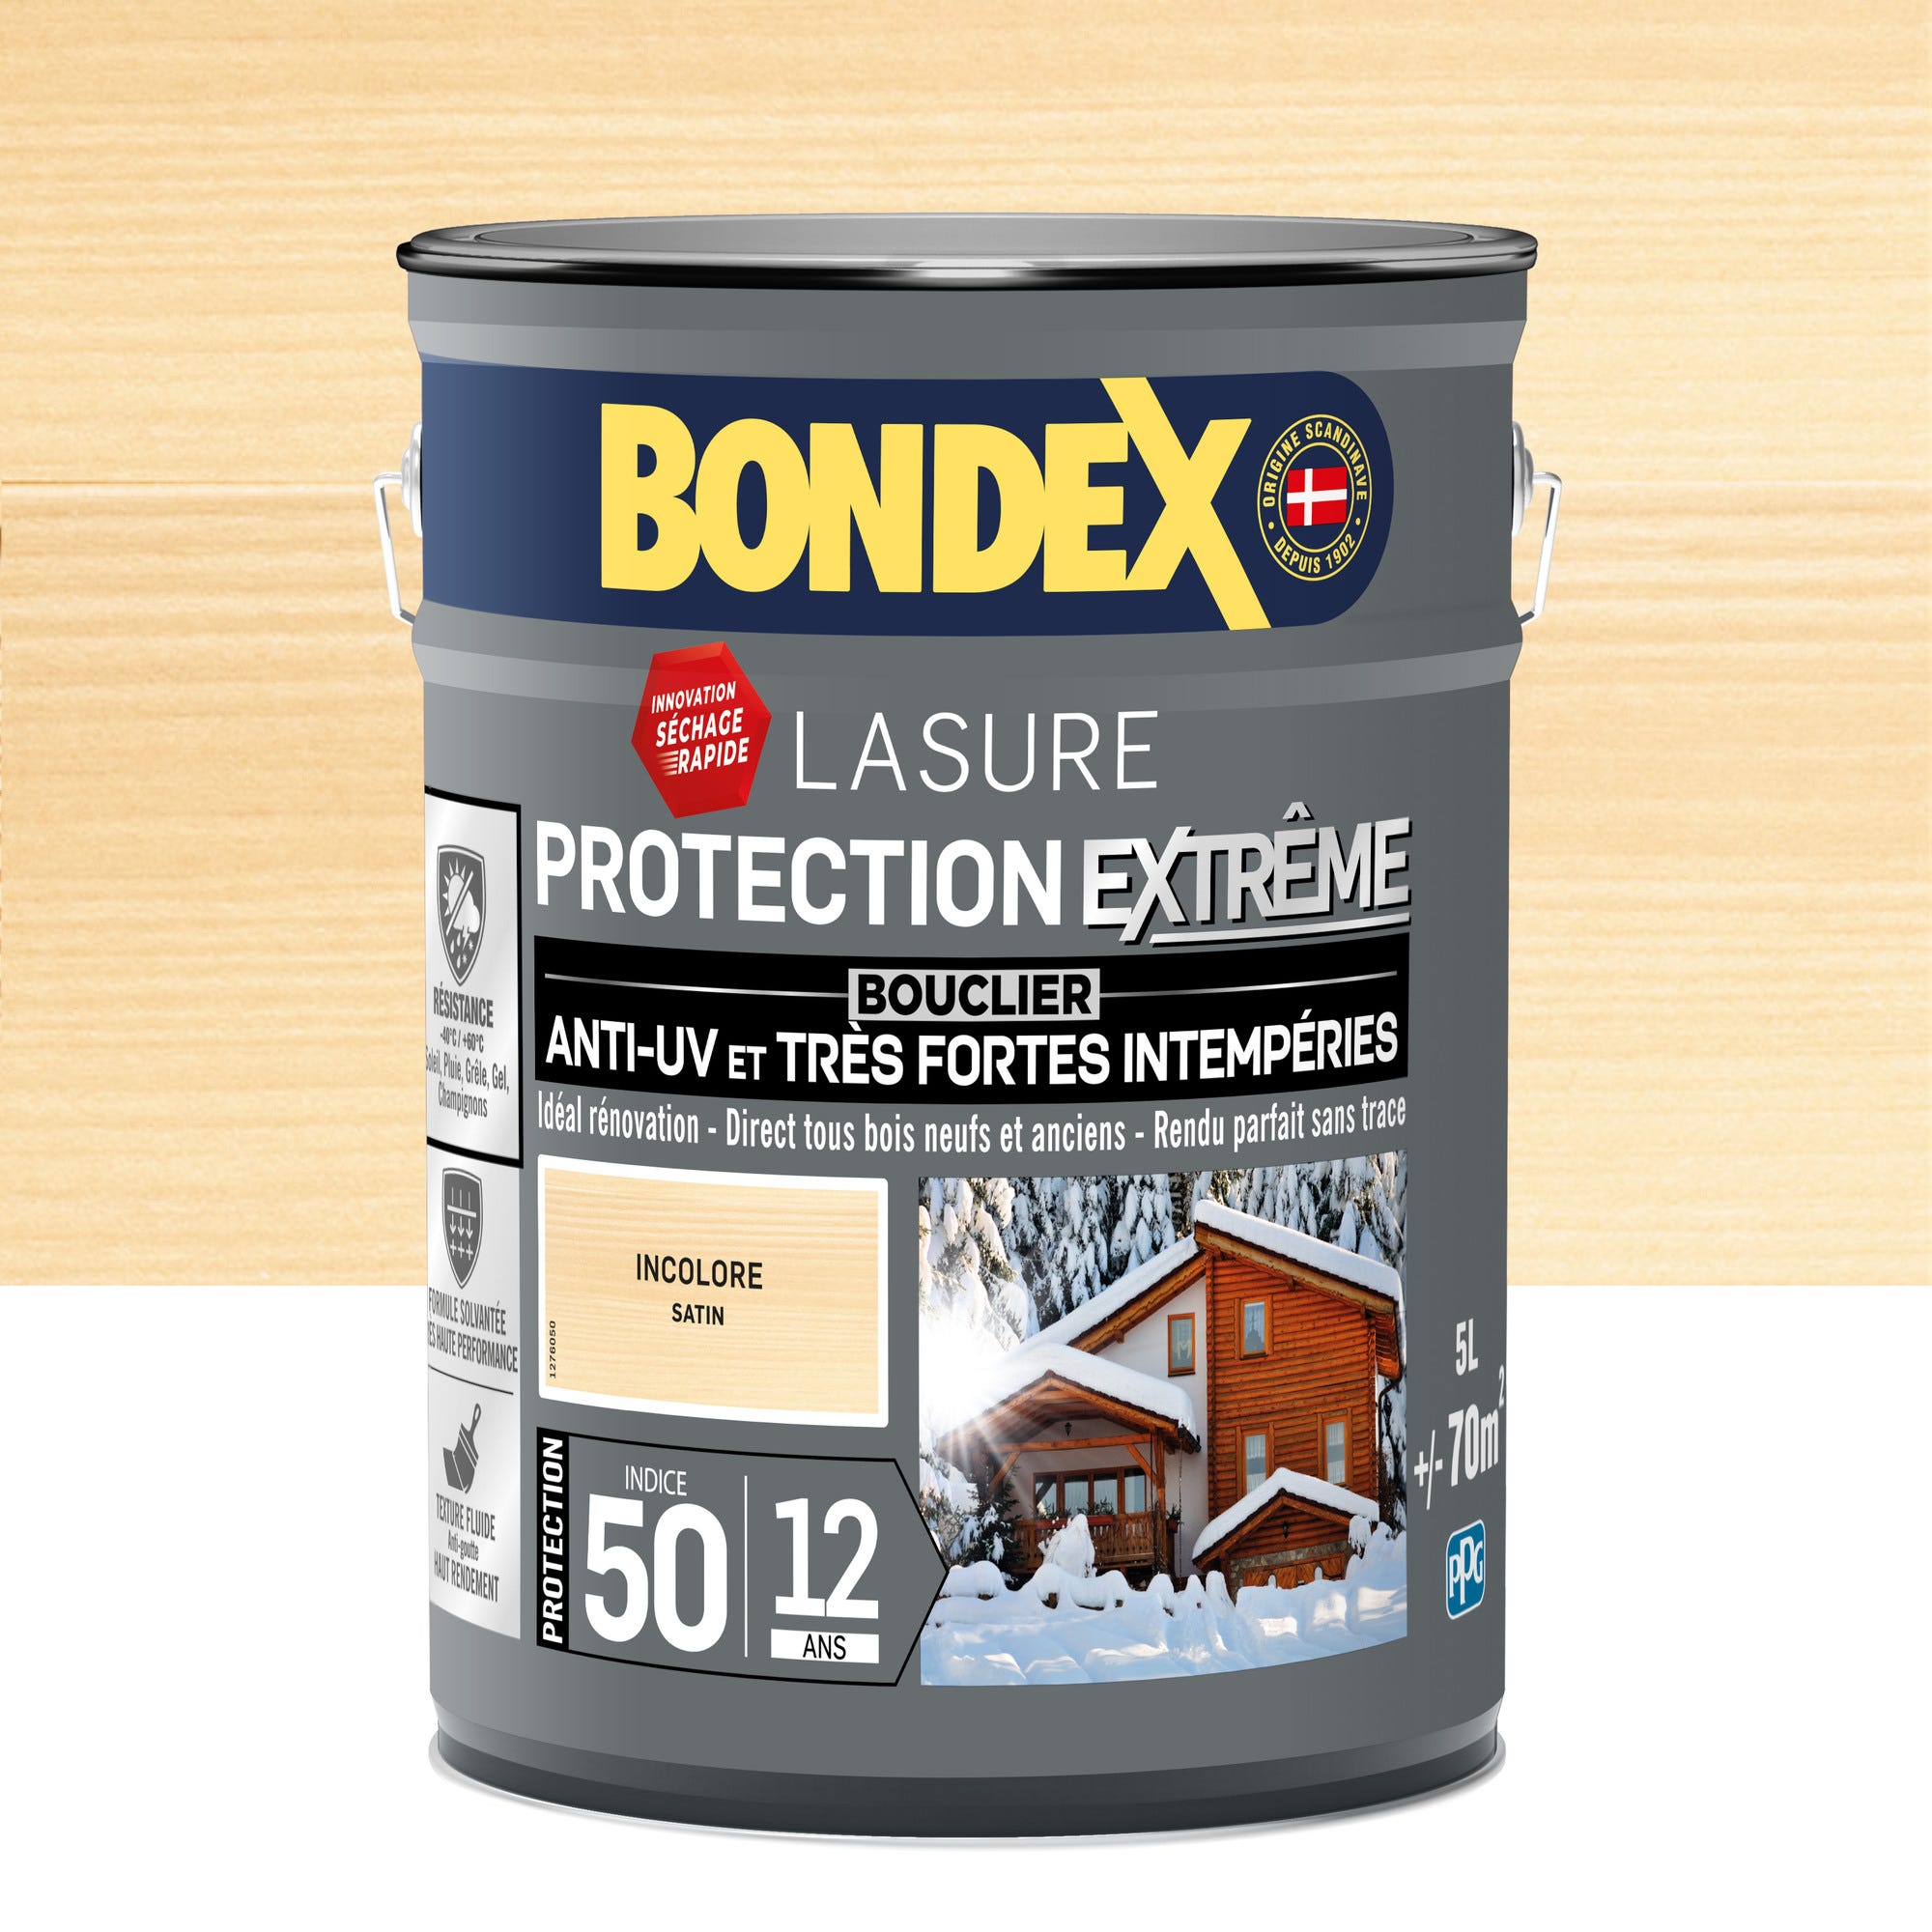 Lasure protection extrême 12 ans incolore 5 L - BONDEX 0